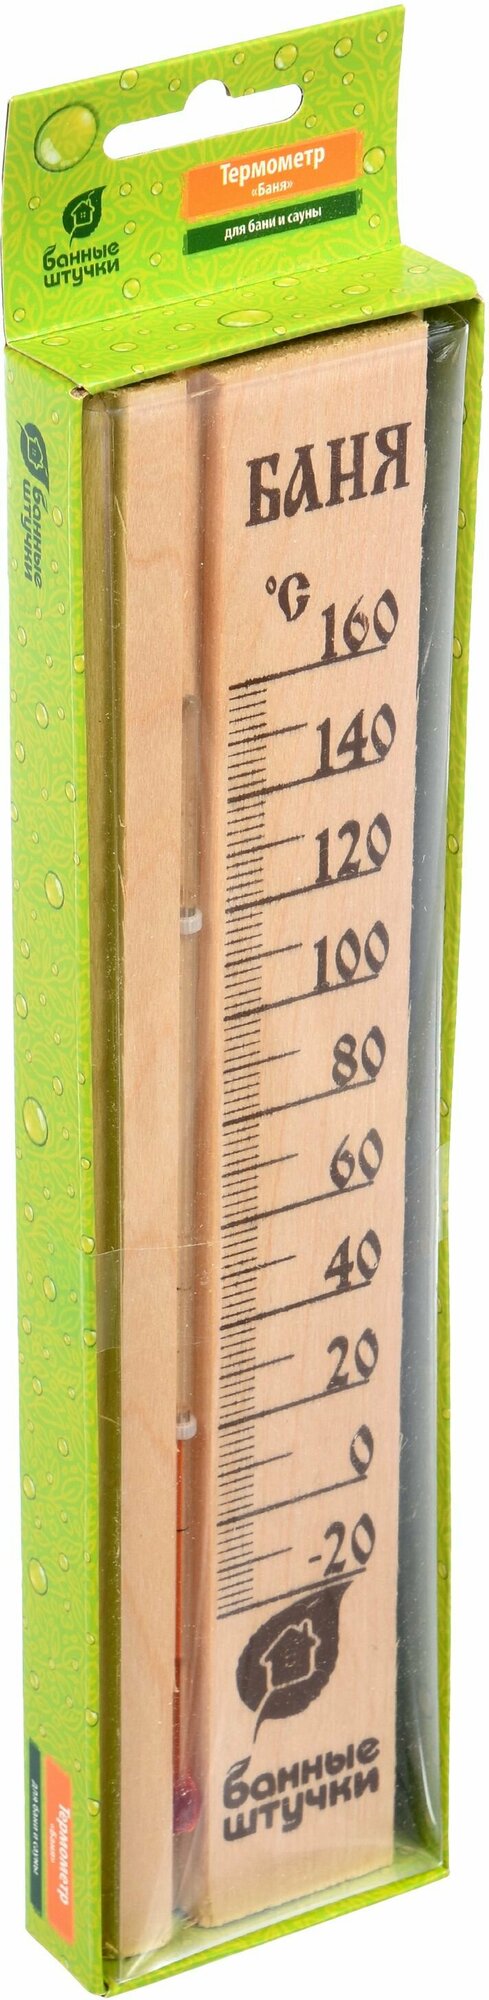 термометр баня 27*6,5*1,5 см для бани и сауны банные штучки - фото №3